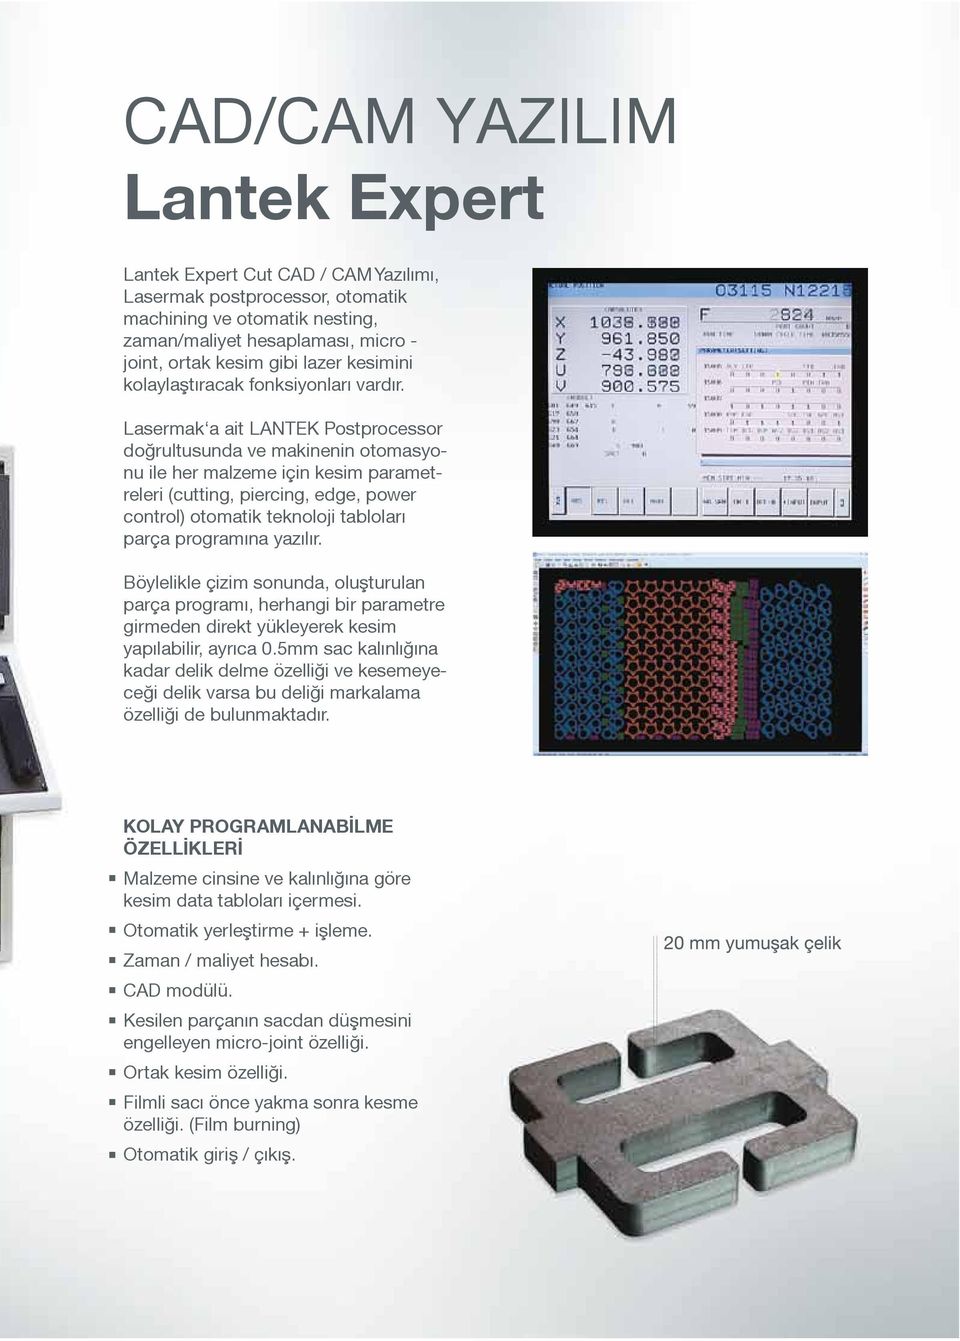 Lasermak a ait LANTEK Postprocessor doğrultusunda ve makinenin otomasyonu ile her malzeme için kesim parametreleri (cutting, piercing, edge, power control) otomatik teknoloji tabloları parça